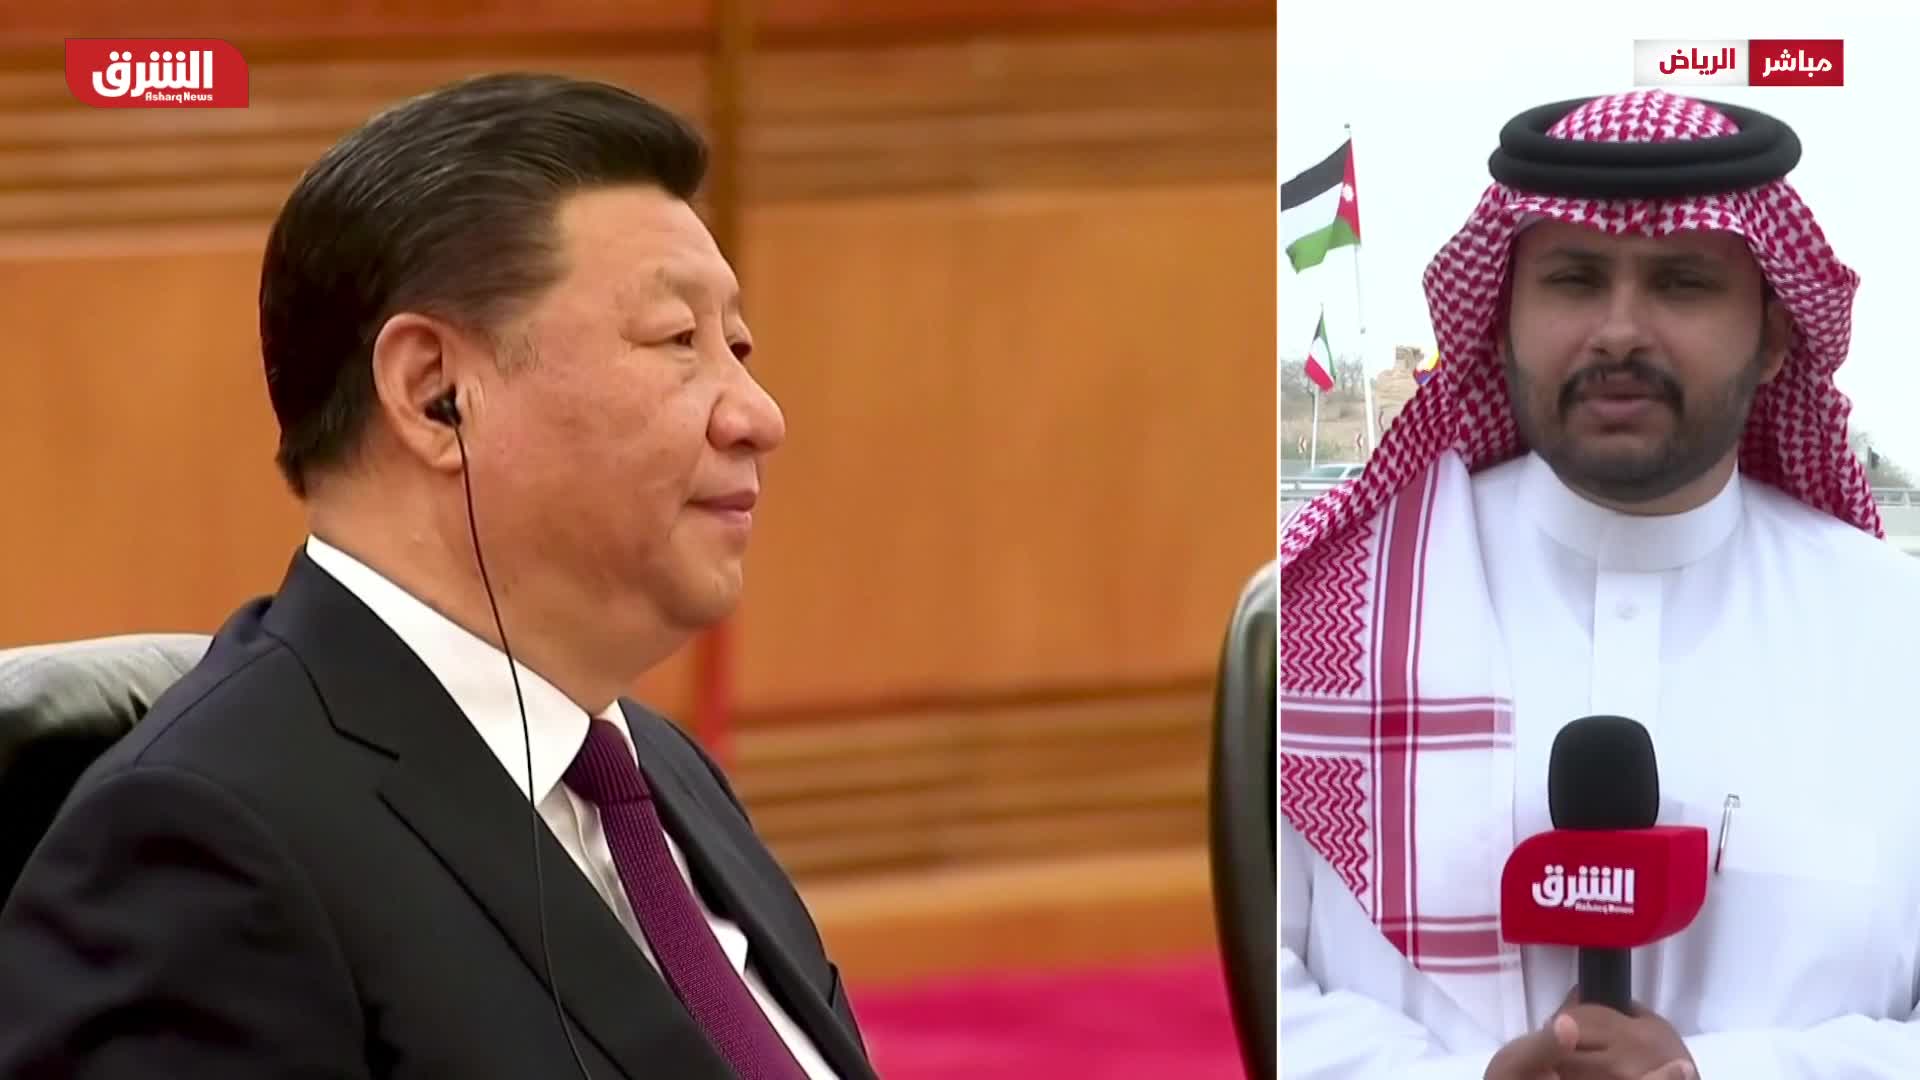 الرئيس الصيني يزور الرياض اليوم لتعزيز الشراكة